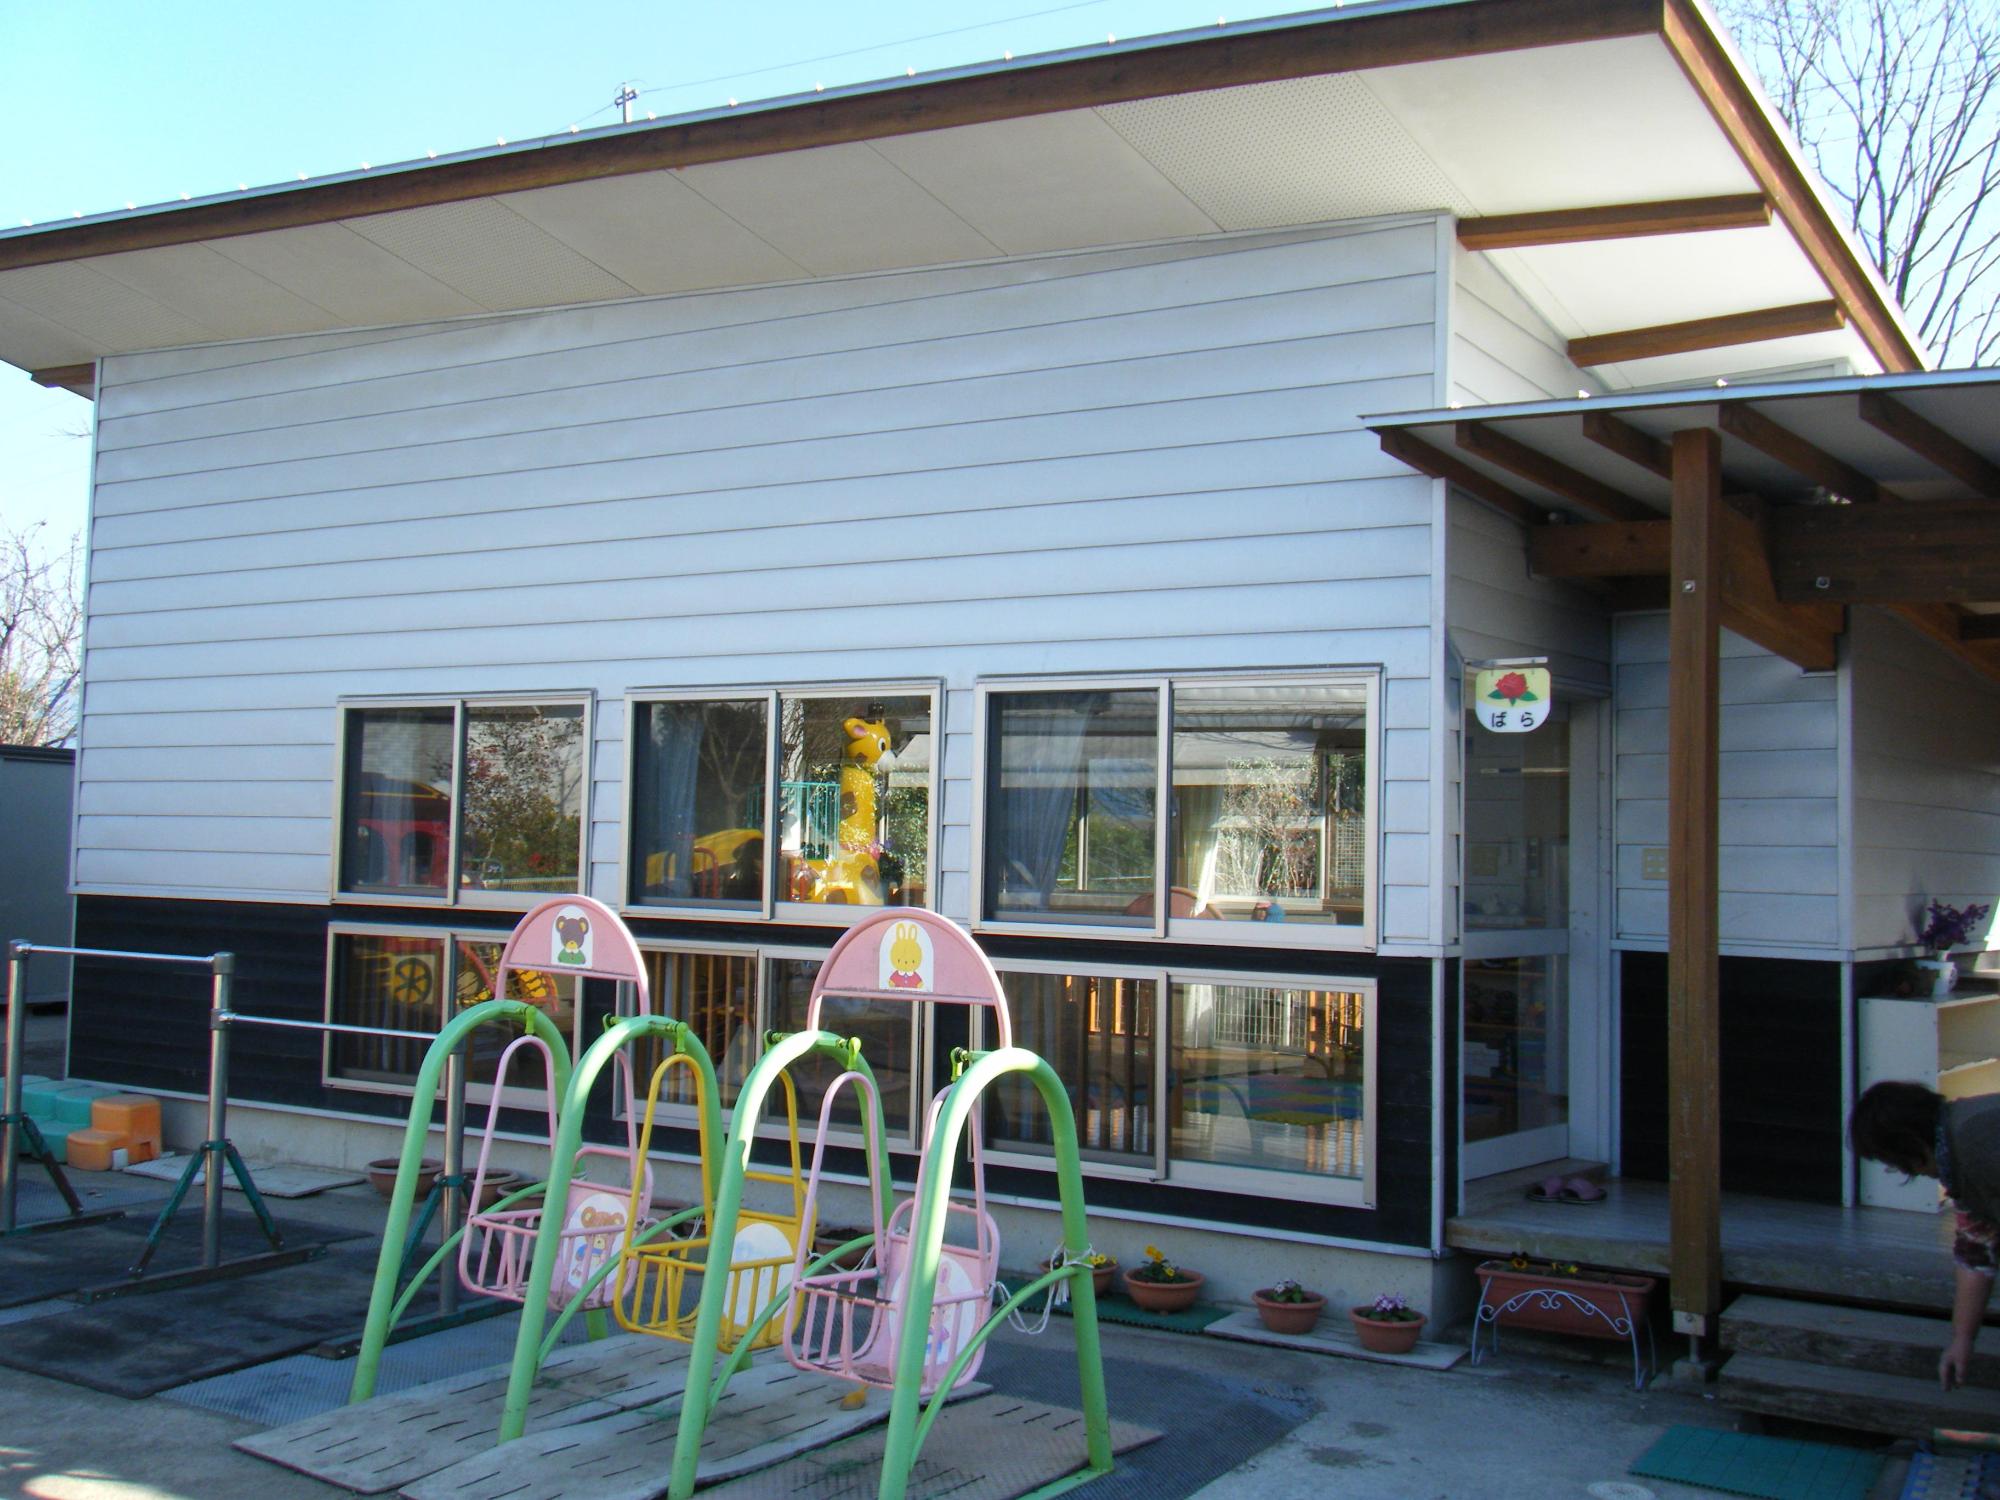 黒肥地保育園子育て支援センターの外観写真。白い建物で、外には鉄棒やブランコなどの遊具が並んでいます。